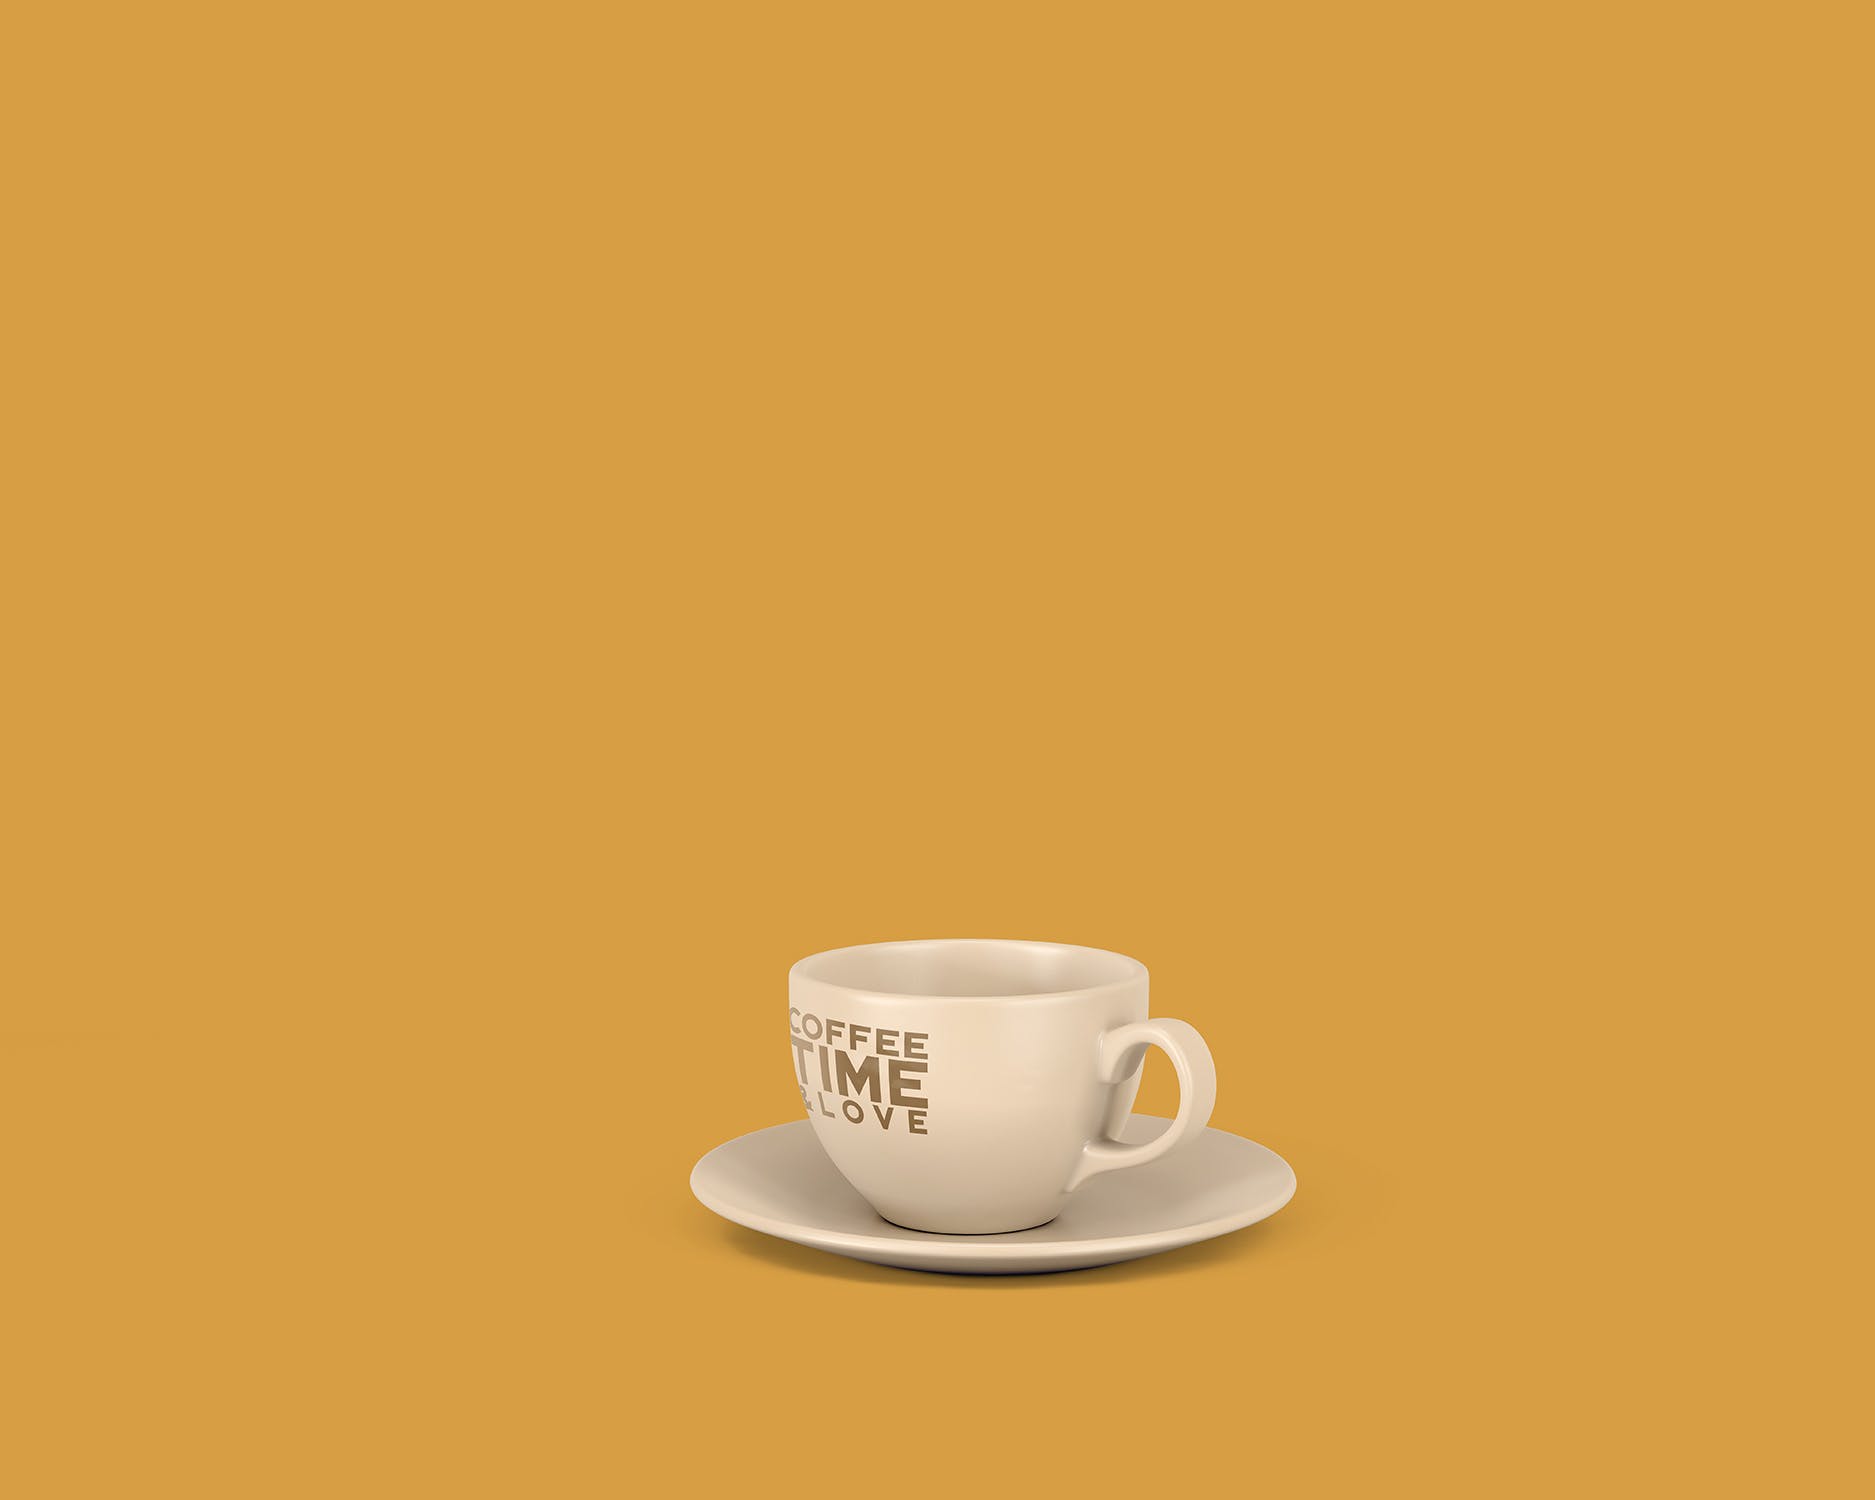 8个咖啡马克杯设计图素材库精选 8 Coffee Cup Mockups插图(9)